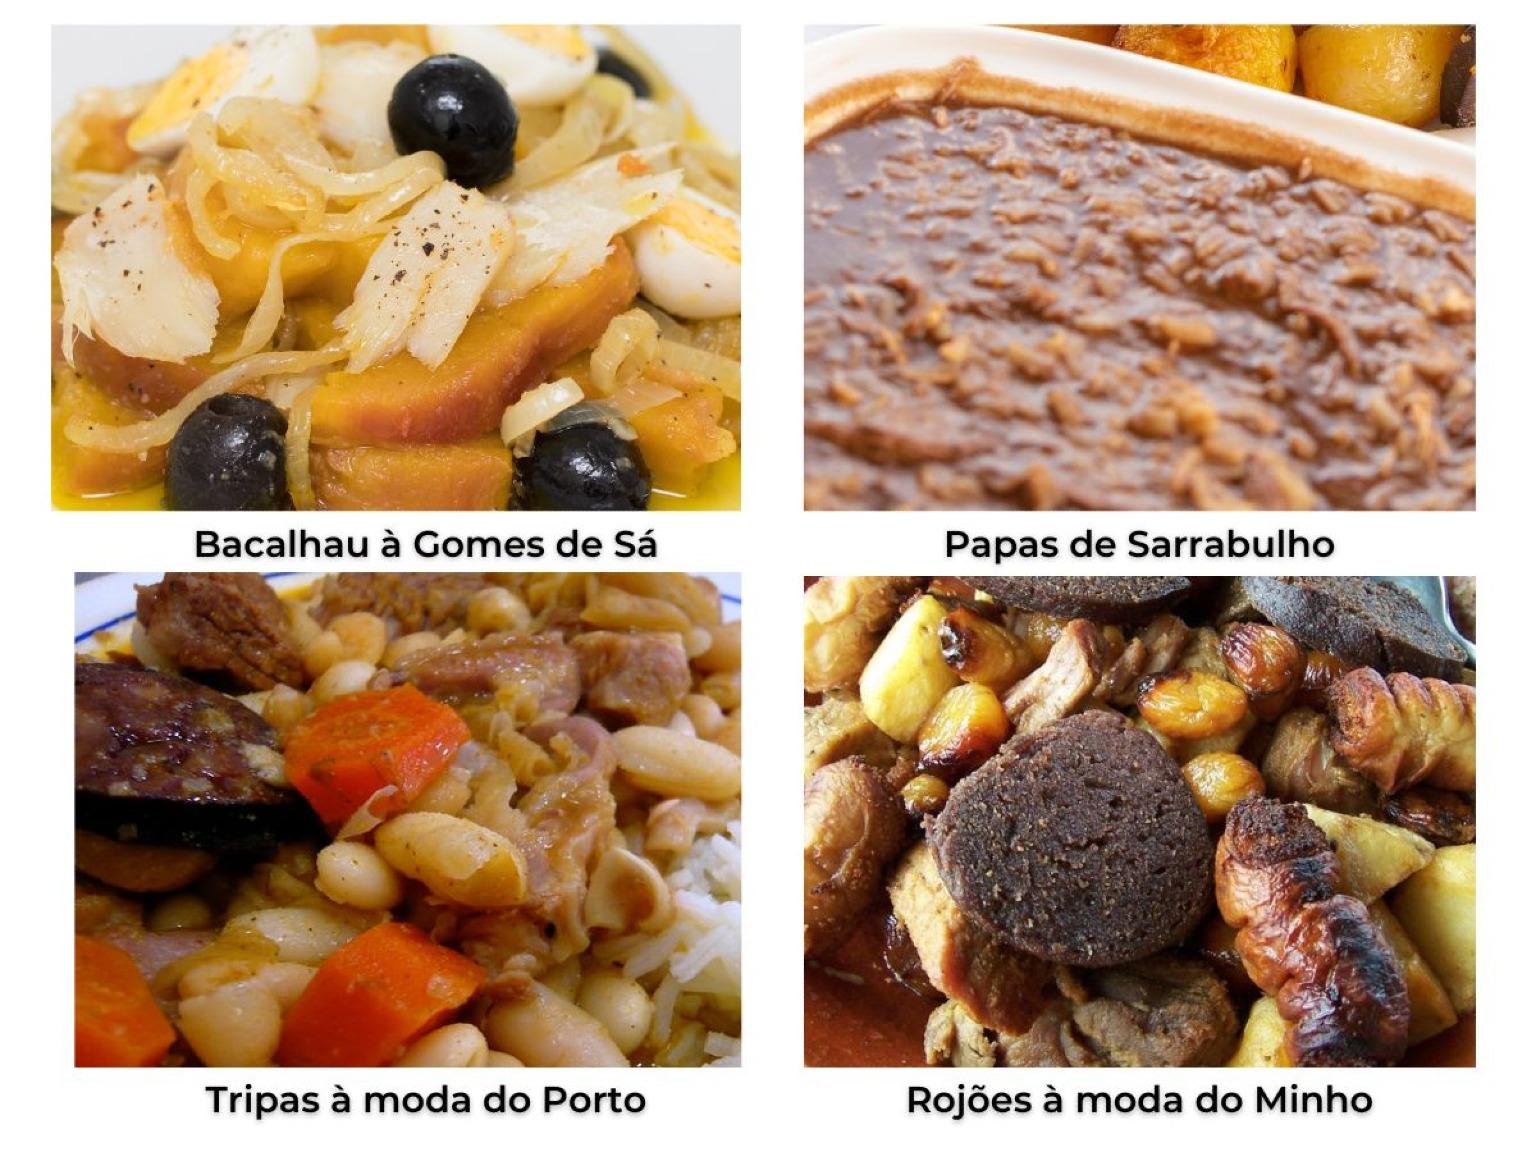 Un collage présentant quatre plats traditionnels portugais : Rojões à Moda do Minho, un plat à base de dés de porc, de tripes farcies, de chorizo, de foie et de sang ; Tripas à Moda do Porto, un ragoût de tripes avec différentes viandes et des haricots blancs ; Papas de Sarrabulho, une bouillie à base de viande de poulet, de porc, de cumin et de farine de pain ou de maïs ; et Bacalhau à Gomes de Sá, un plat à base de morue, d'huile d'olive, d'ail, d'oignon, d'olives noires, de persil et d'oeufs durs.